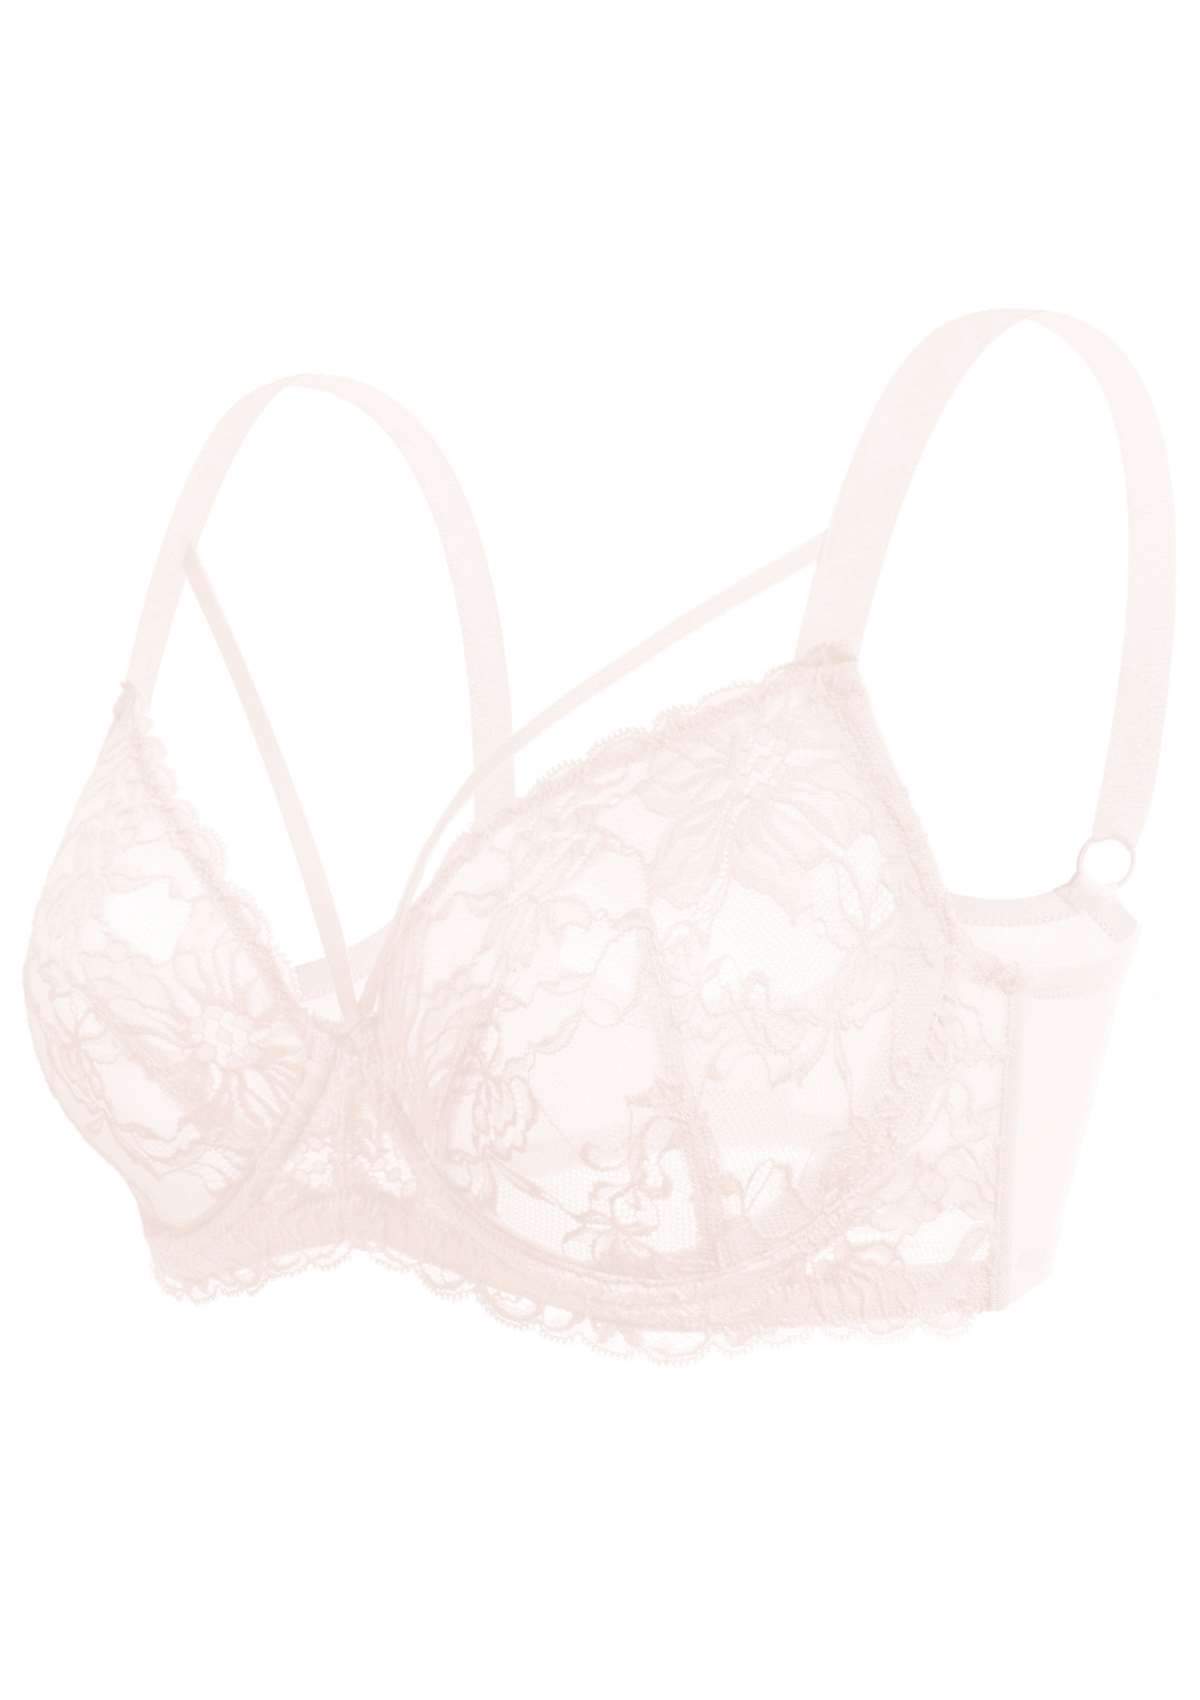 HSIA Pretty In Petals Underwire Lace Bra: No Padding, Full Cup Bra - Pink / 42 / DDD/F